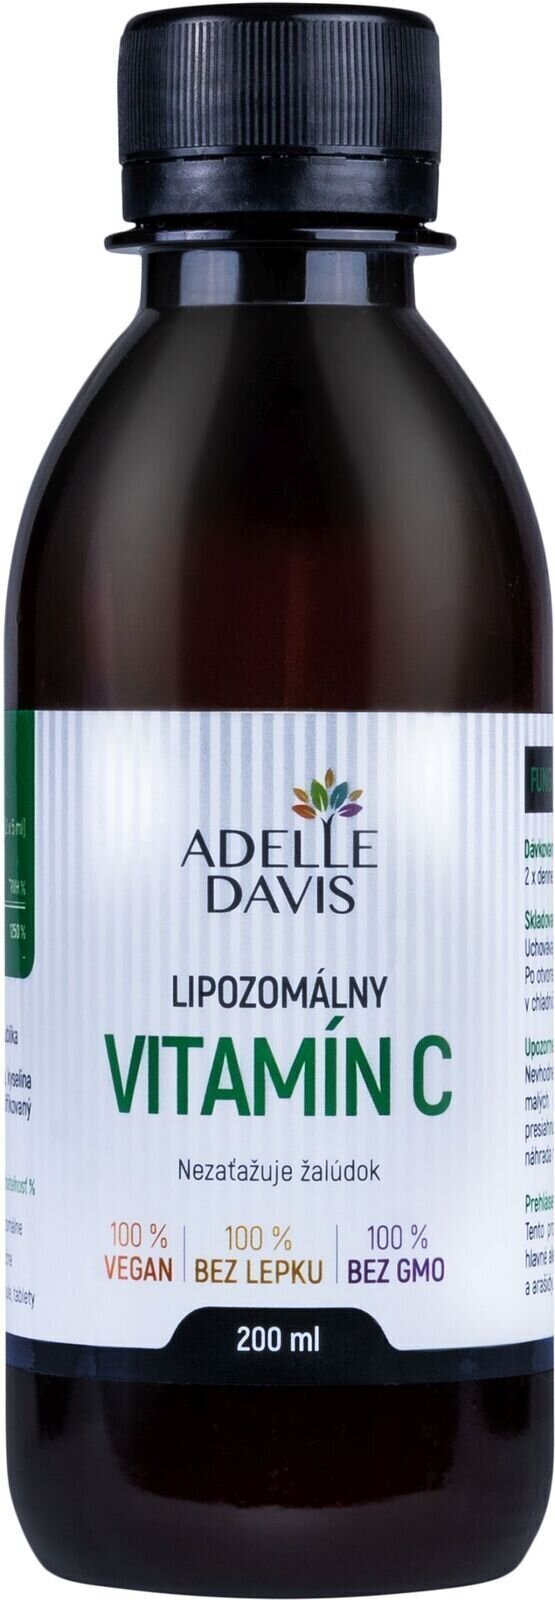 Βιταμίνη C Adelle Davis Liposomal Vitamin C 200 ml Βιταμίνη C